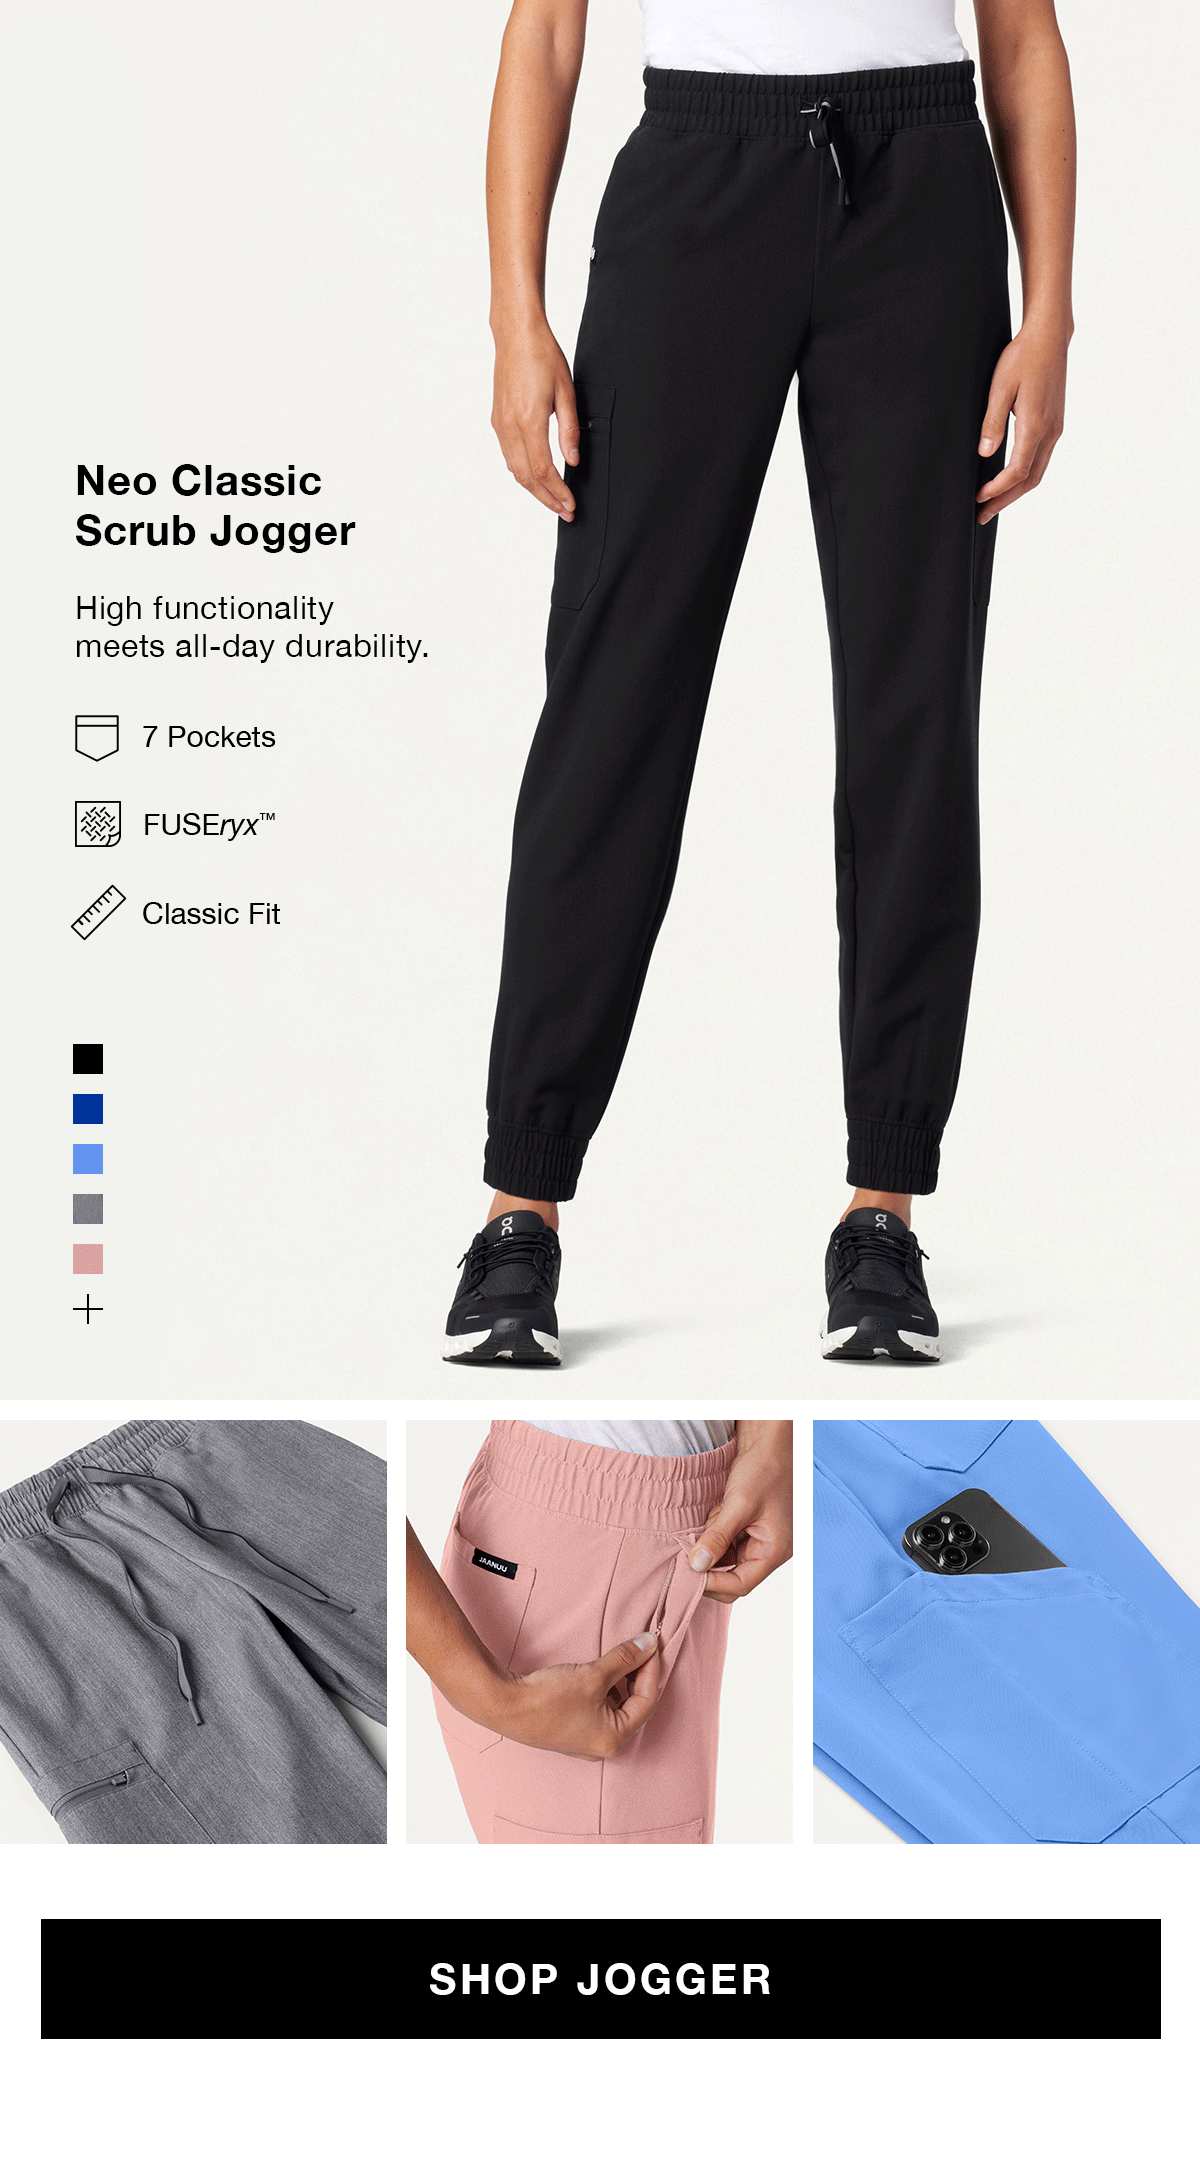 Rubi Slim Scrub Jogger in Burgundy - Women's Pants by Jaanuu